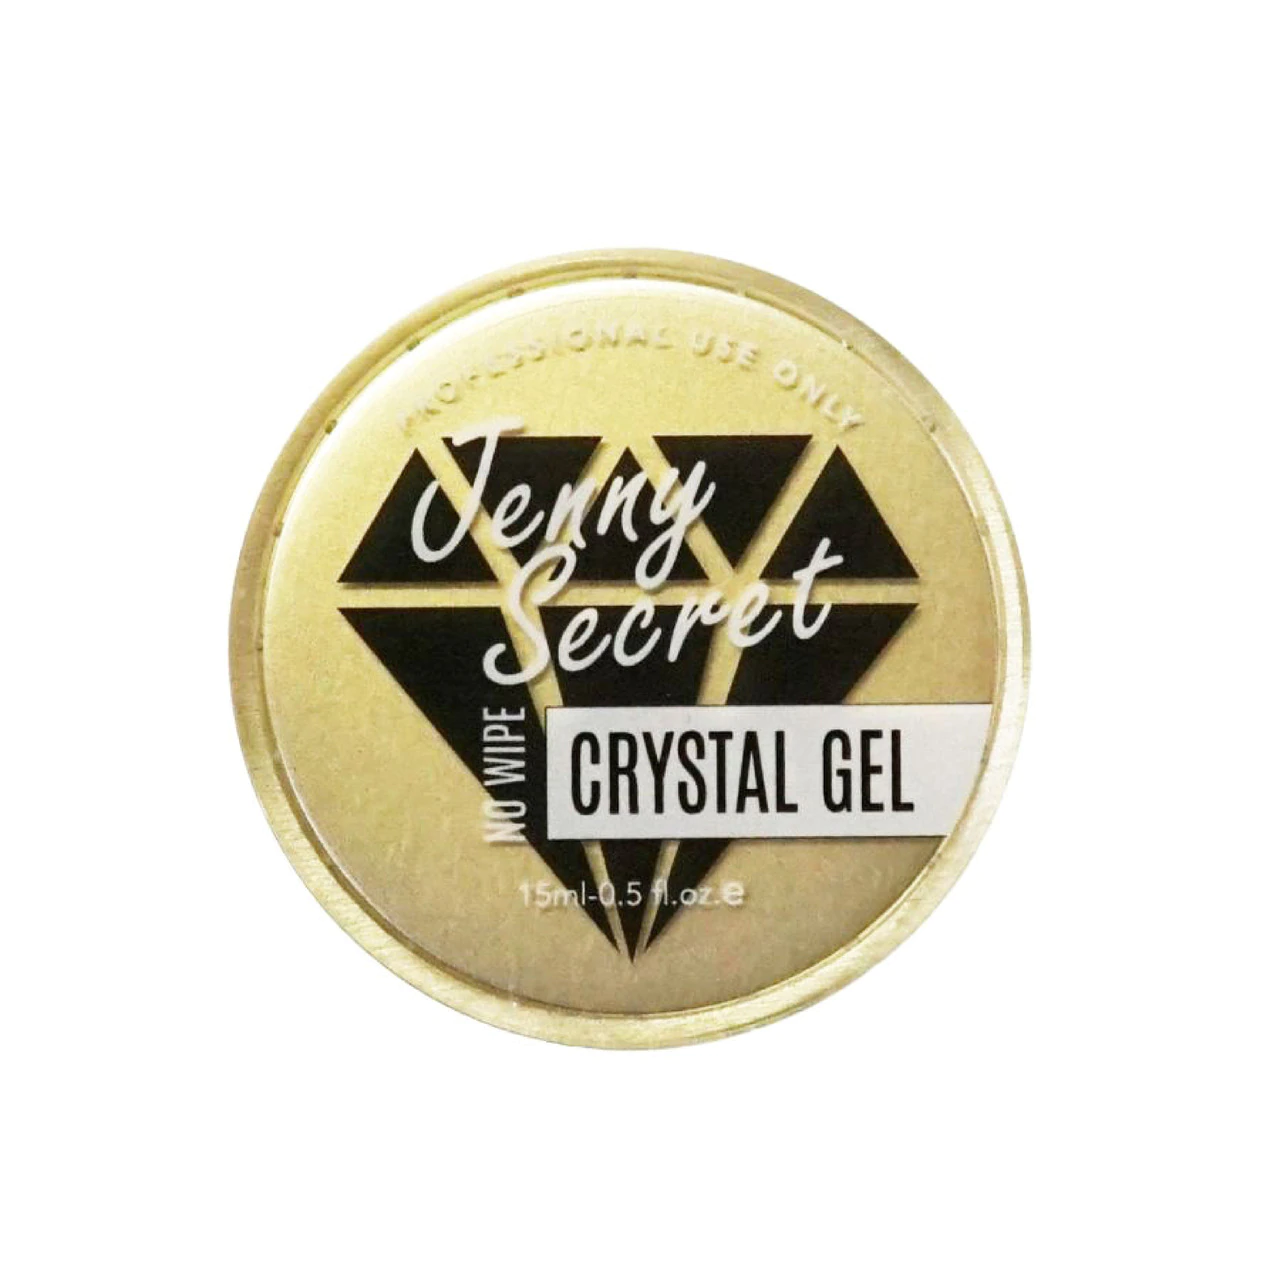 Jenny Secret Crystal Gel (No Wipe) 15ml